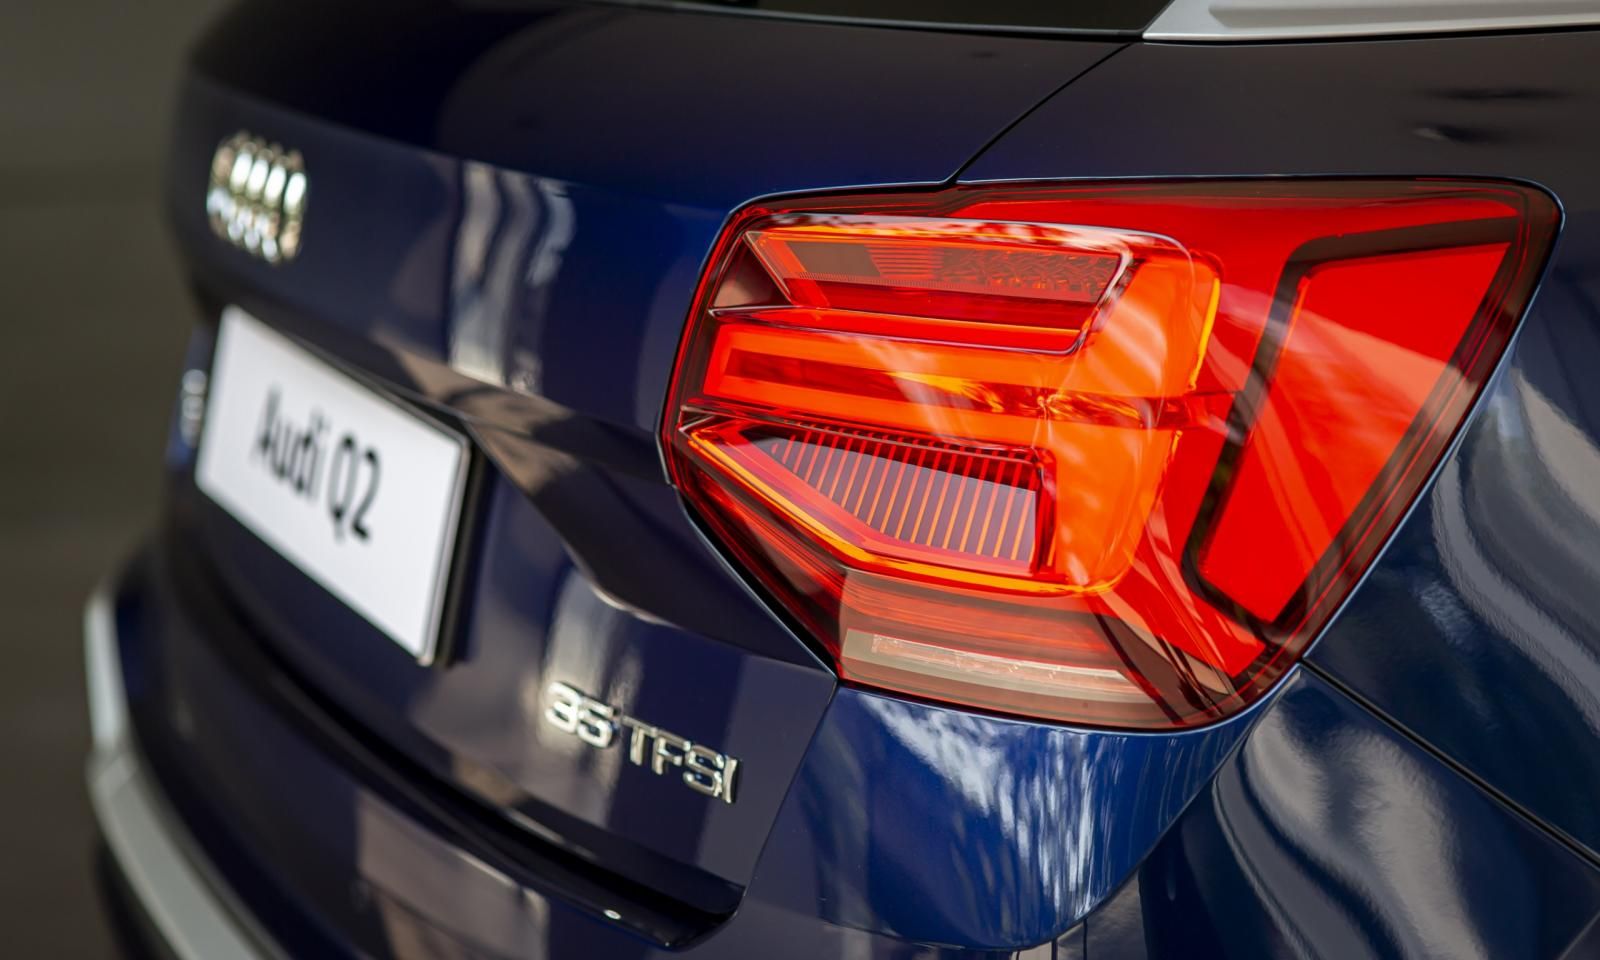 Audi Q2 2021 - Audi Hà Nội - Audi Q2 năm sản xuất 2021 chính hãng cùng nhiều ưu đãi giá tốt nhất Miền Bắc